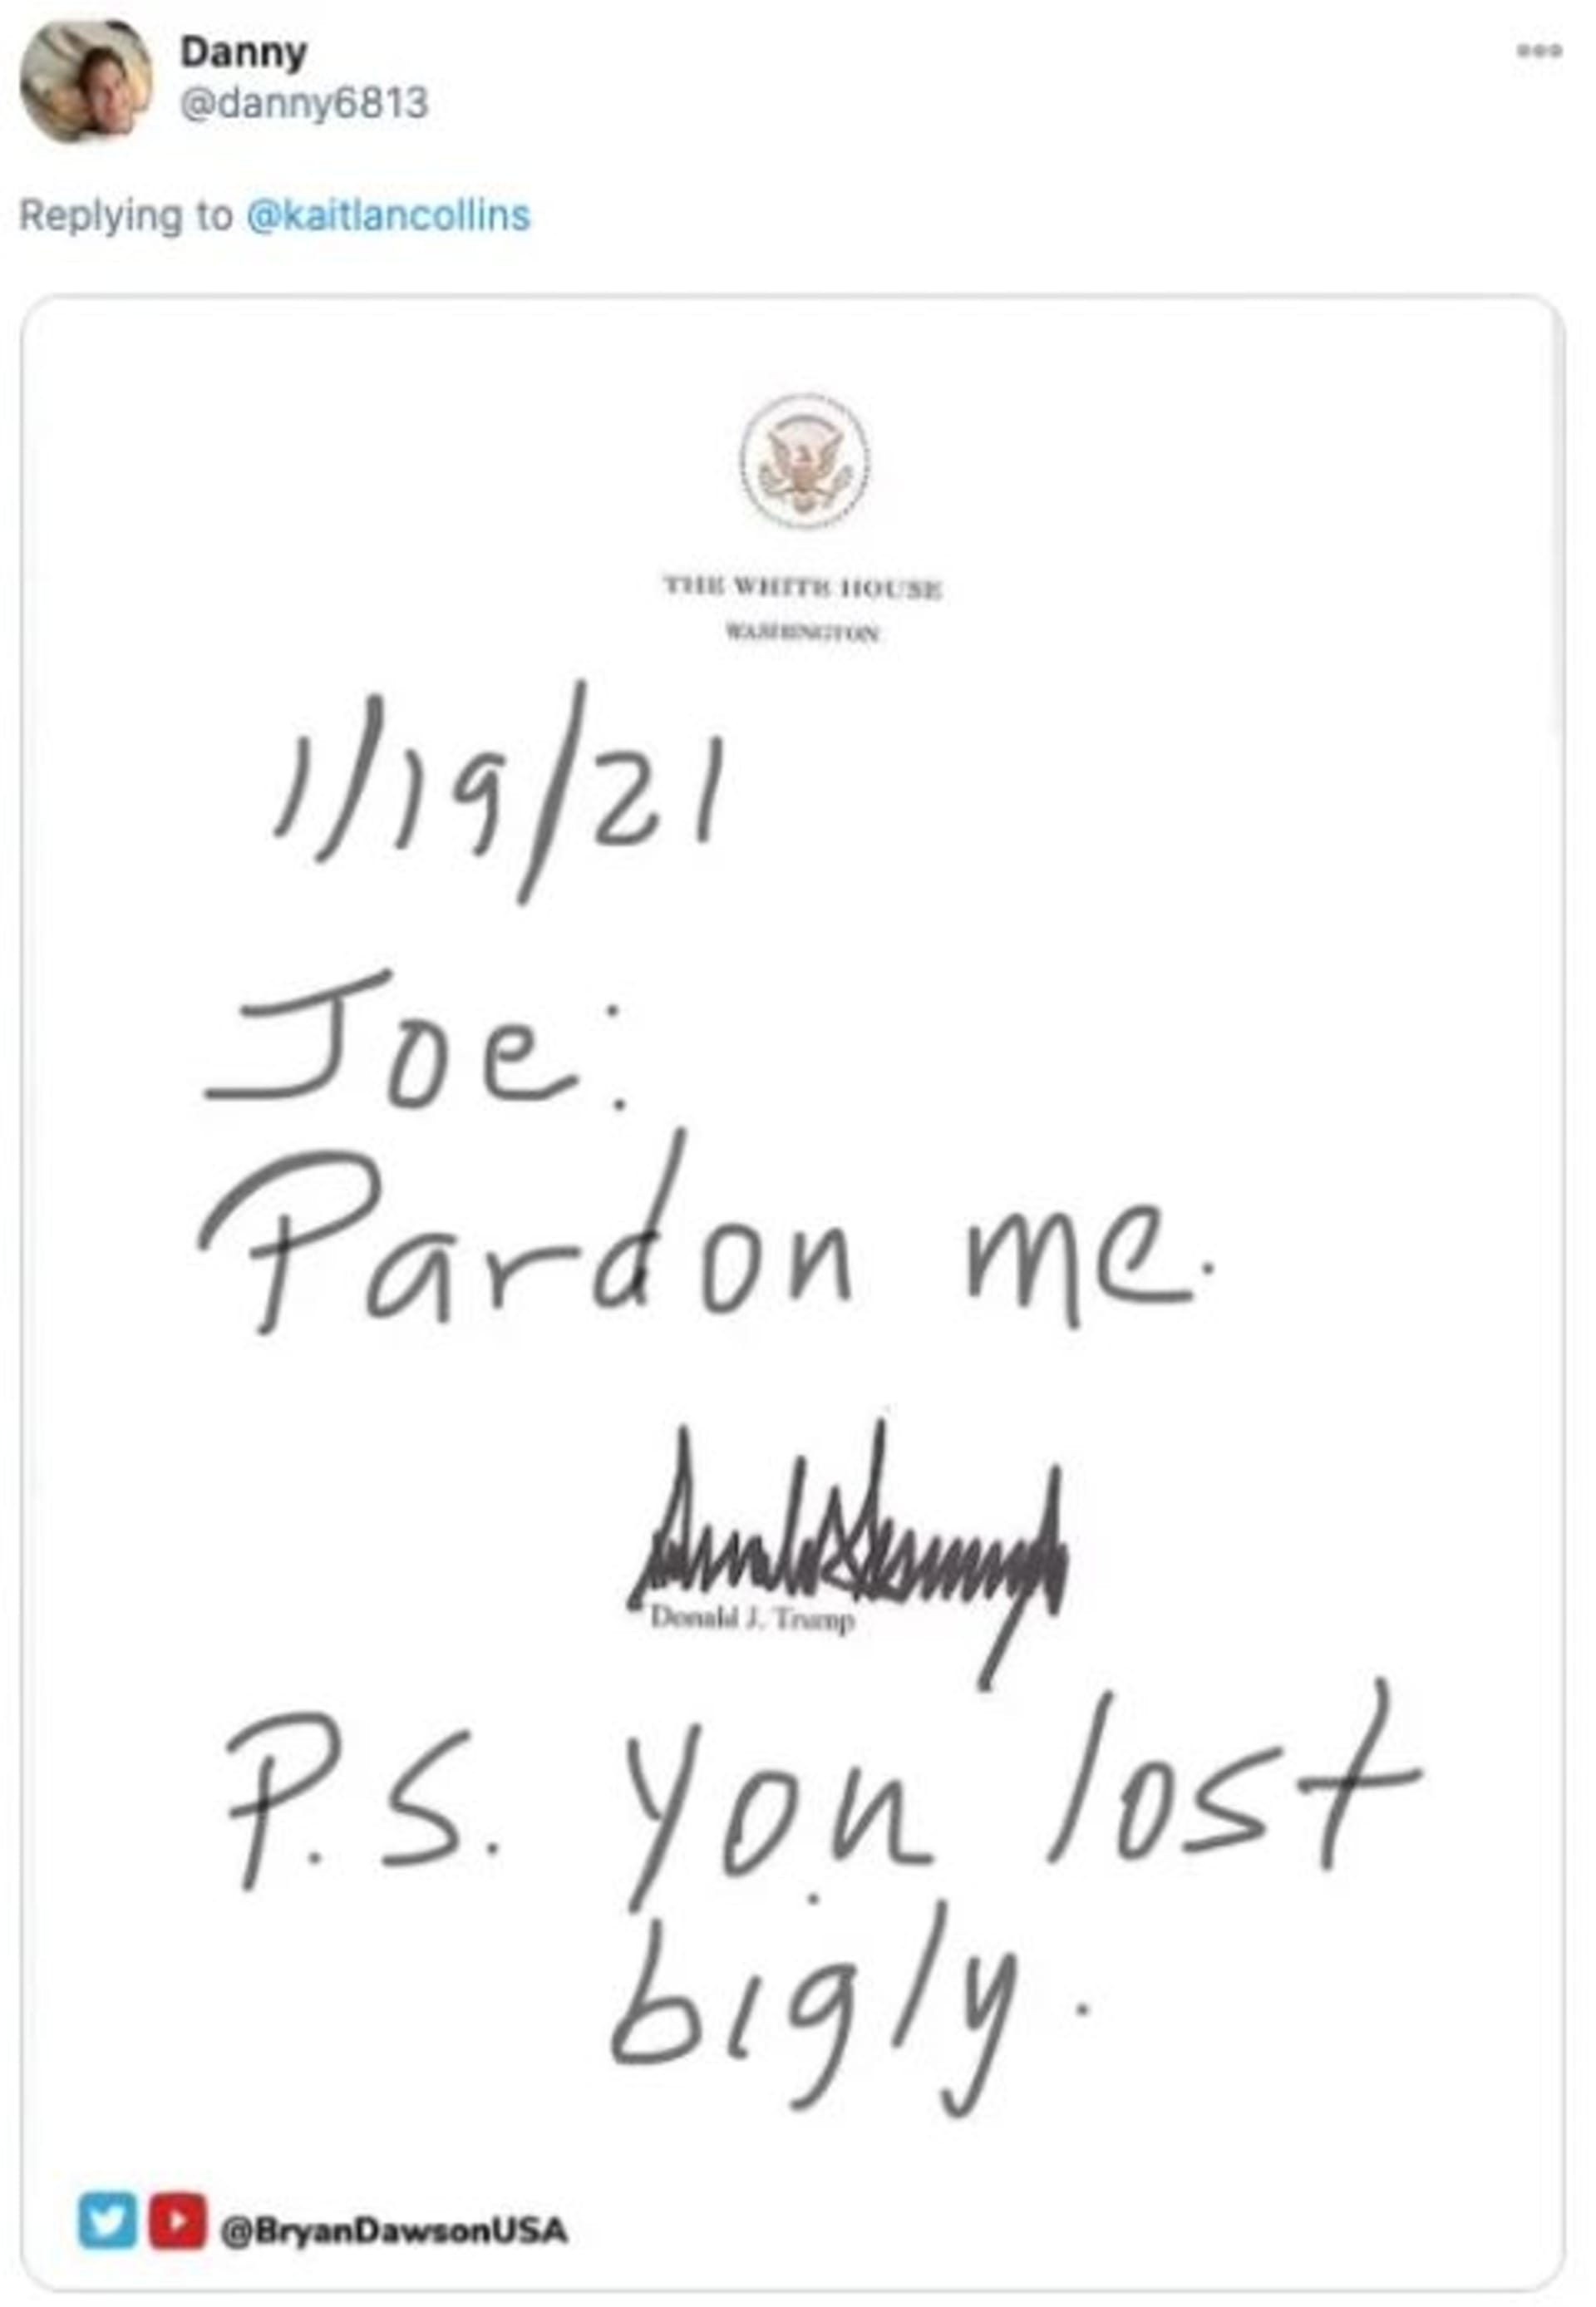 Co napsal Trump na vzkaz prezidentu Bidenovi?